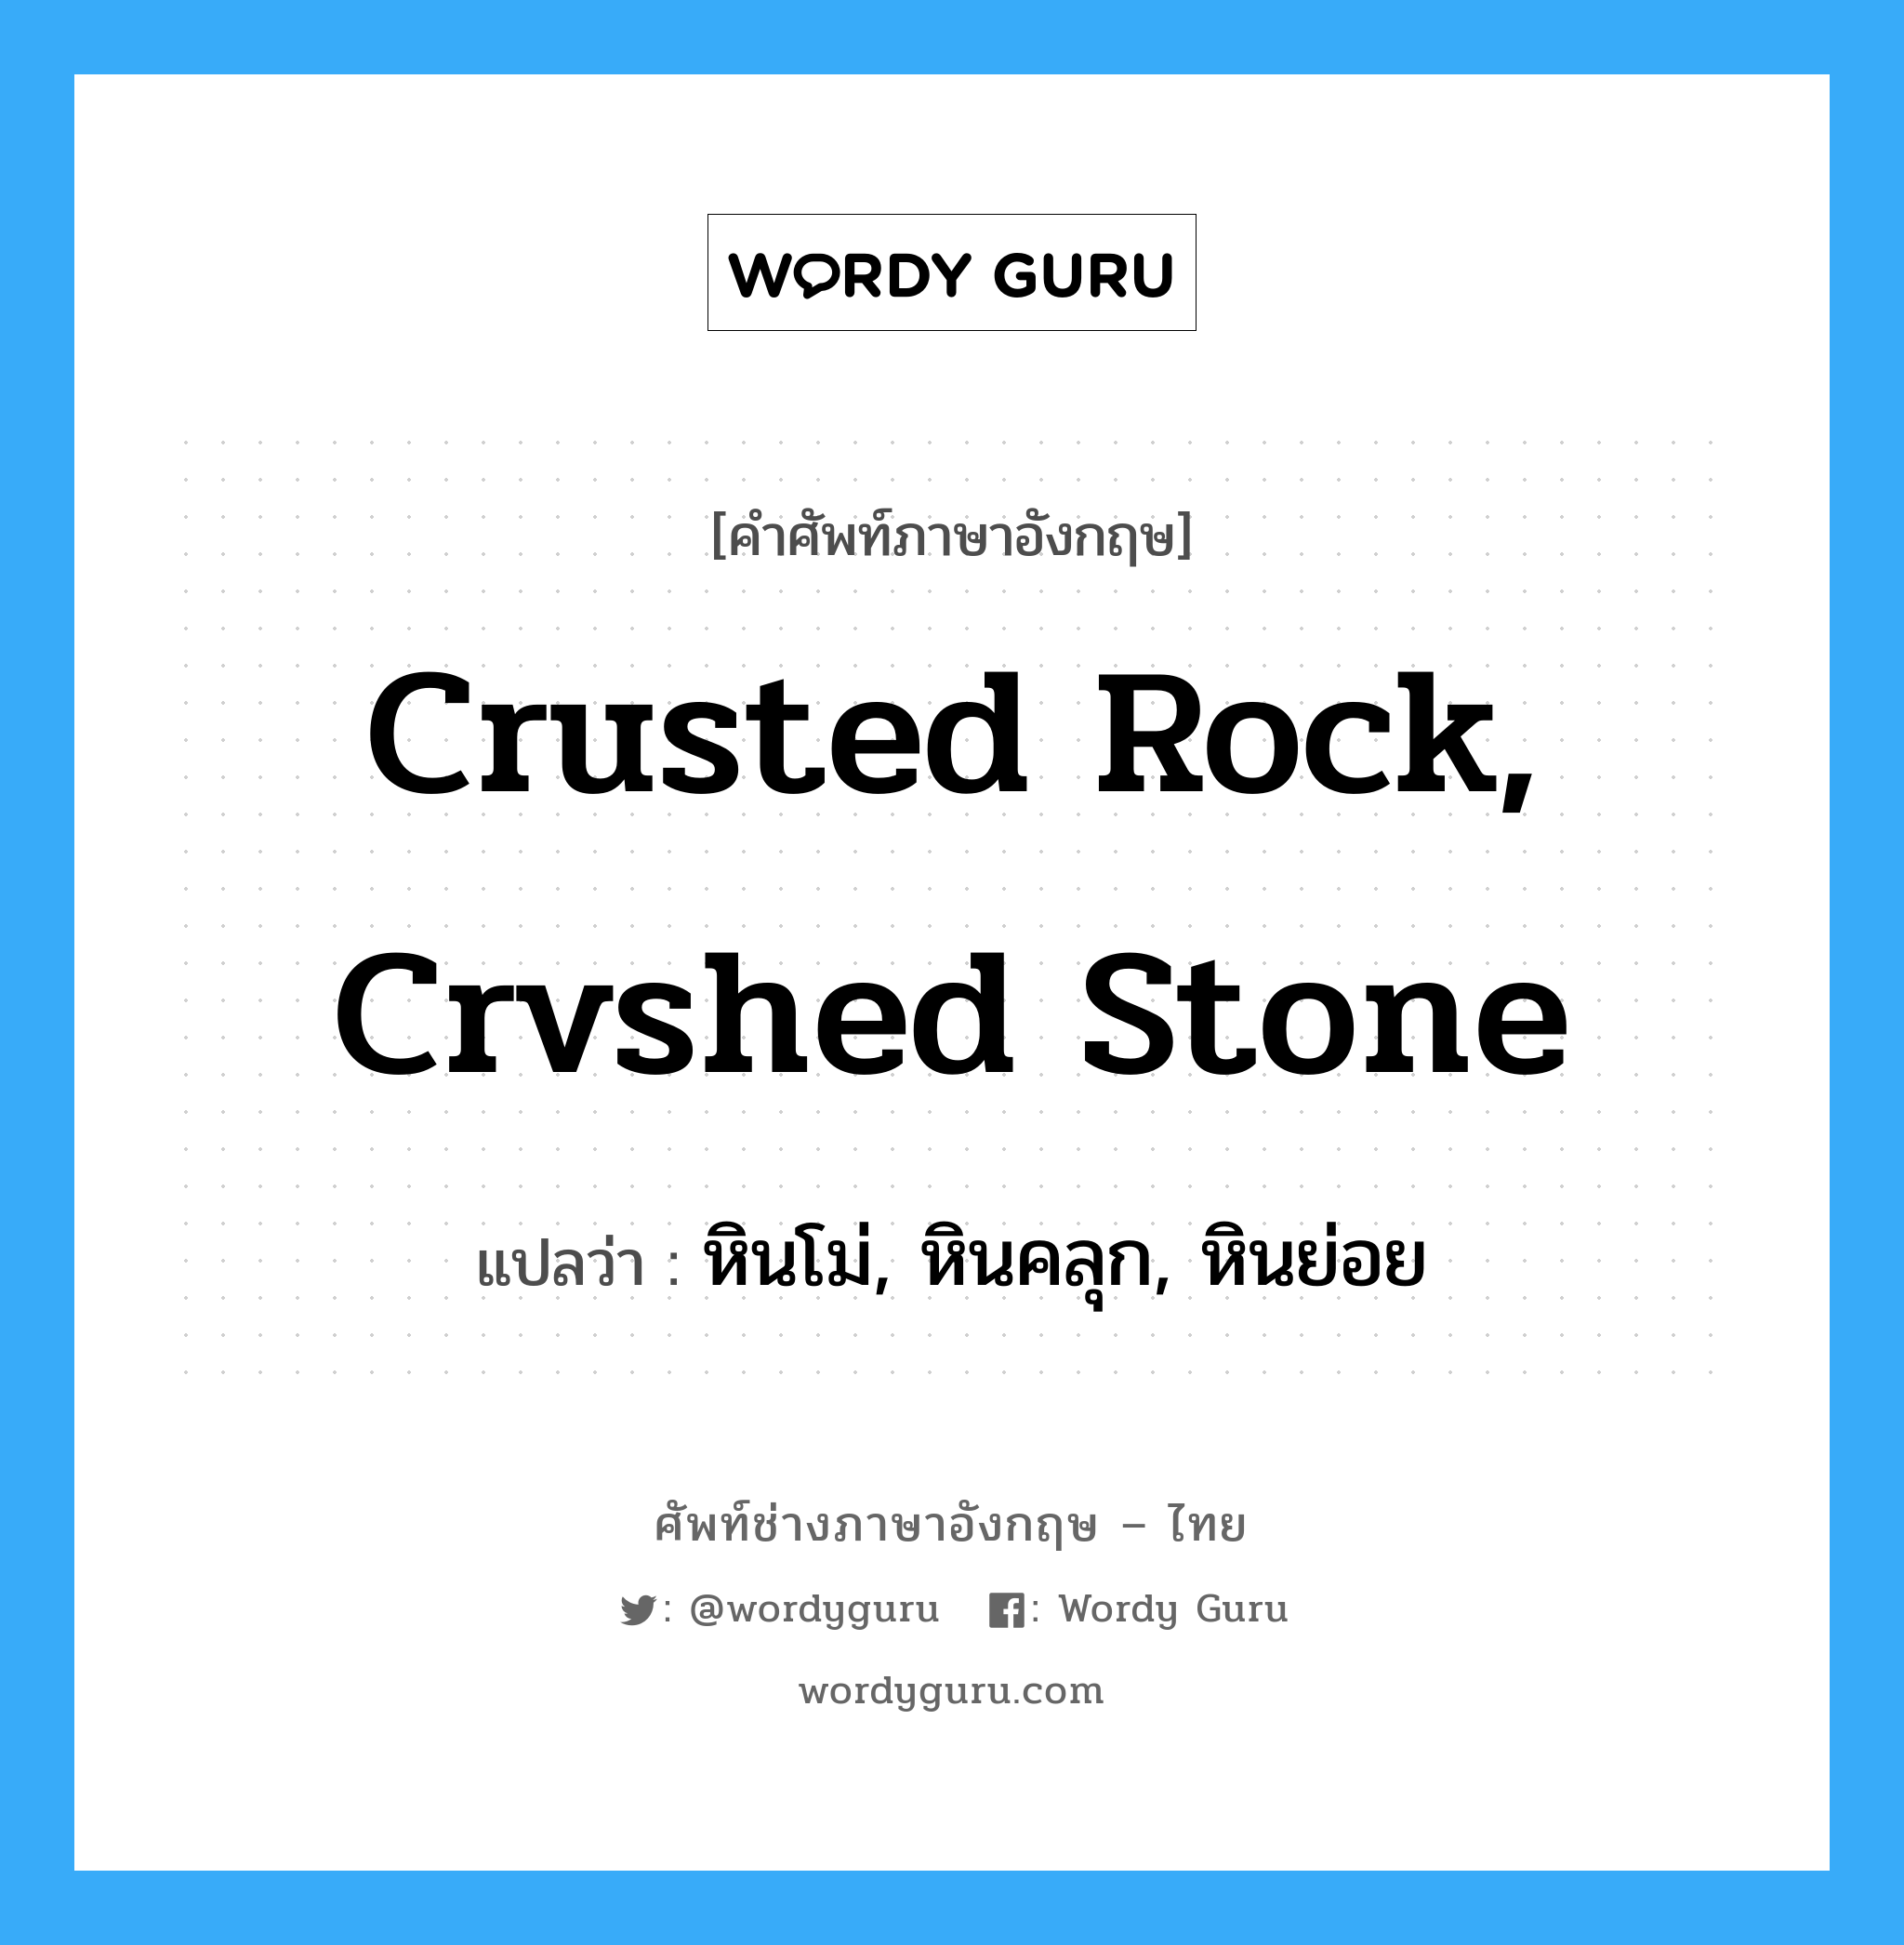 หินโม่, หินคลุก, หินย่อย ภาษาอังกฤษ?, คำศัพท์ช่างภาษาอังกฤษ - ไทย หินโม่, หินคลุก, หินย่อย คำศัพท์ภาษาอังกฤษ หินโม่, หินคลุก, หินย่อย แปลว่า crusted rock, crvshed stone